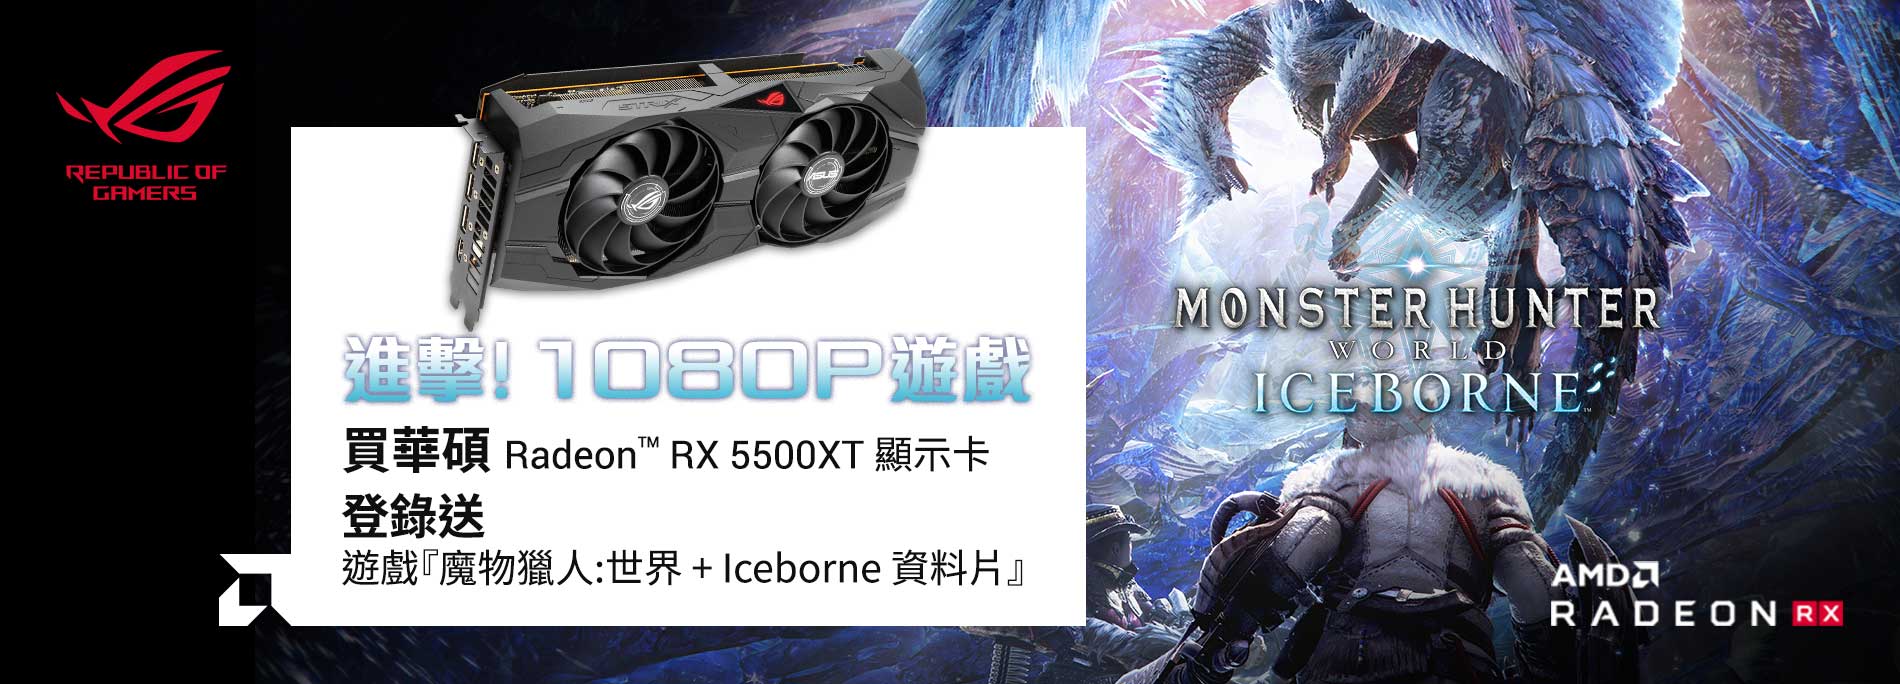 【進擊！1080P 遊戲】購買 ASUS RADEON RX 5500XT 系列顯示卡，登錄送遊戲《魔物獵人:世界 + Iceborne資料片》。(數量有限，送完為止)